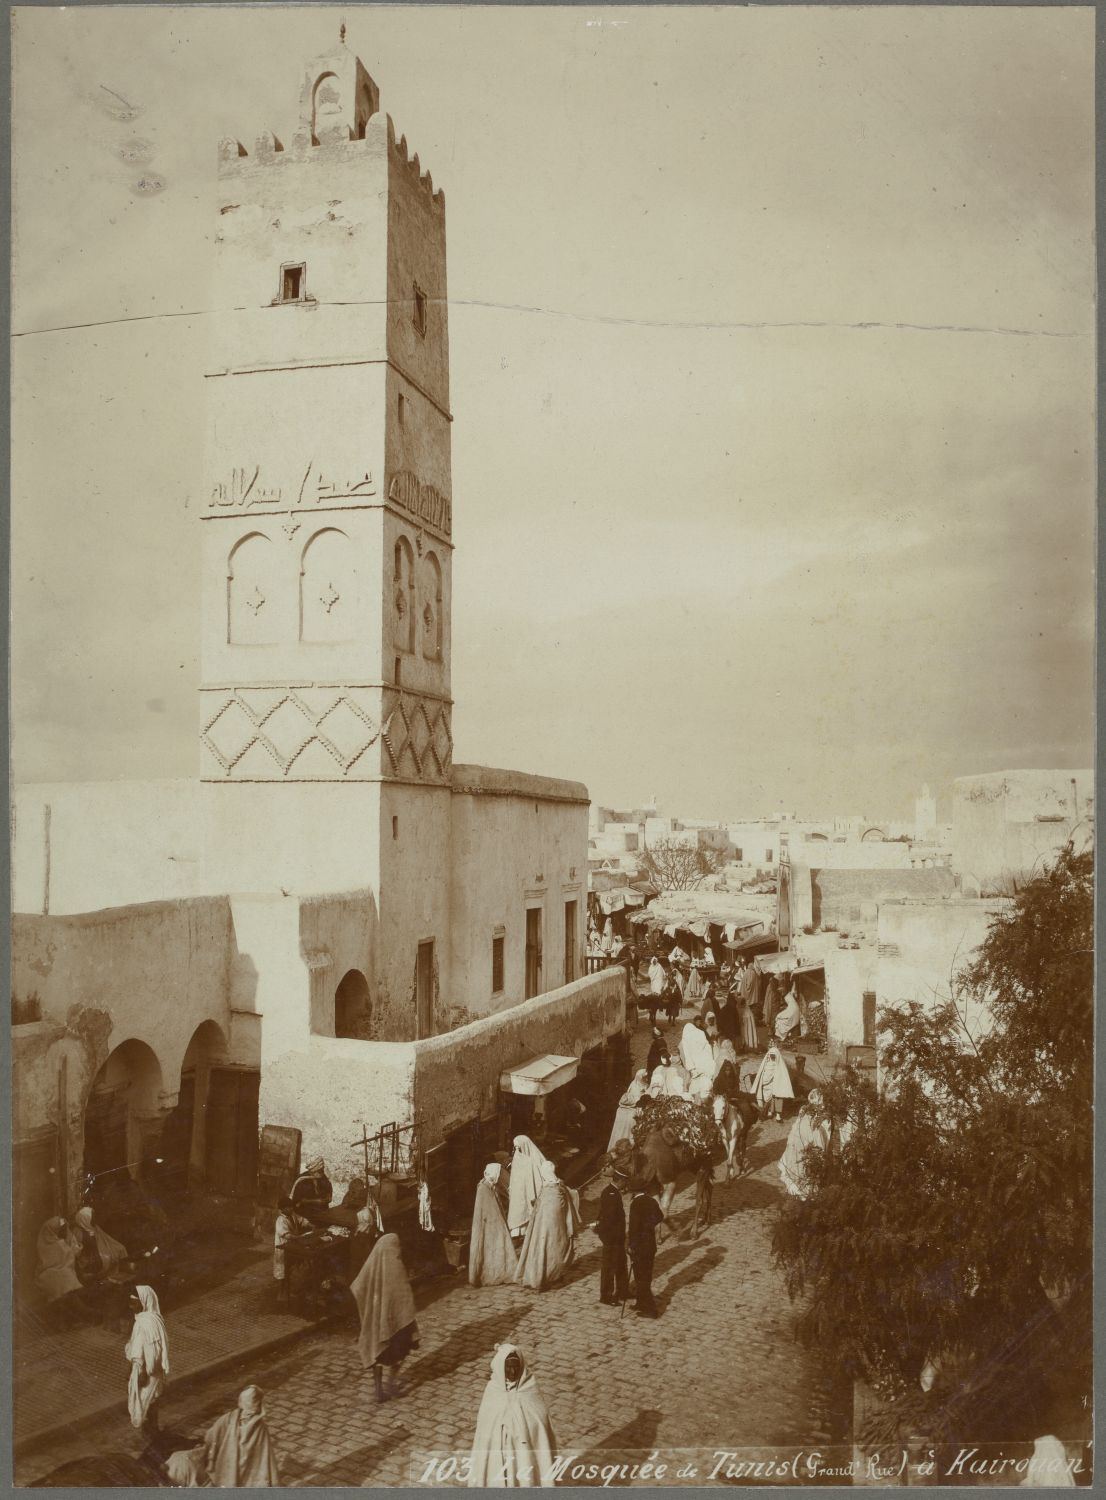 Jami' al-Malek